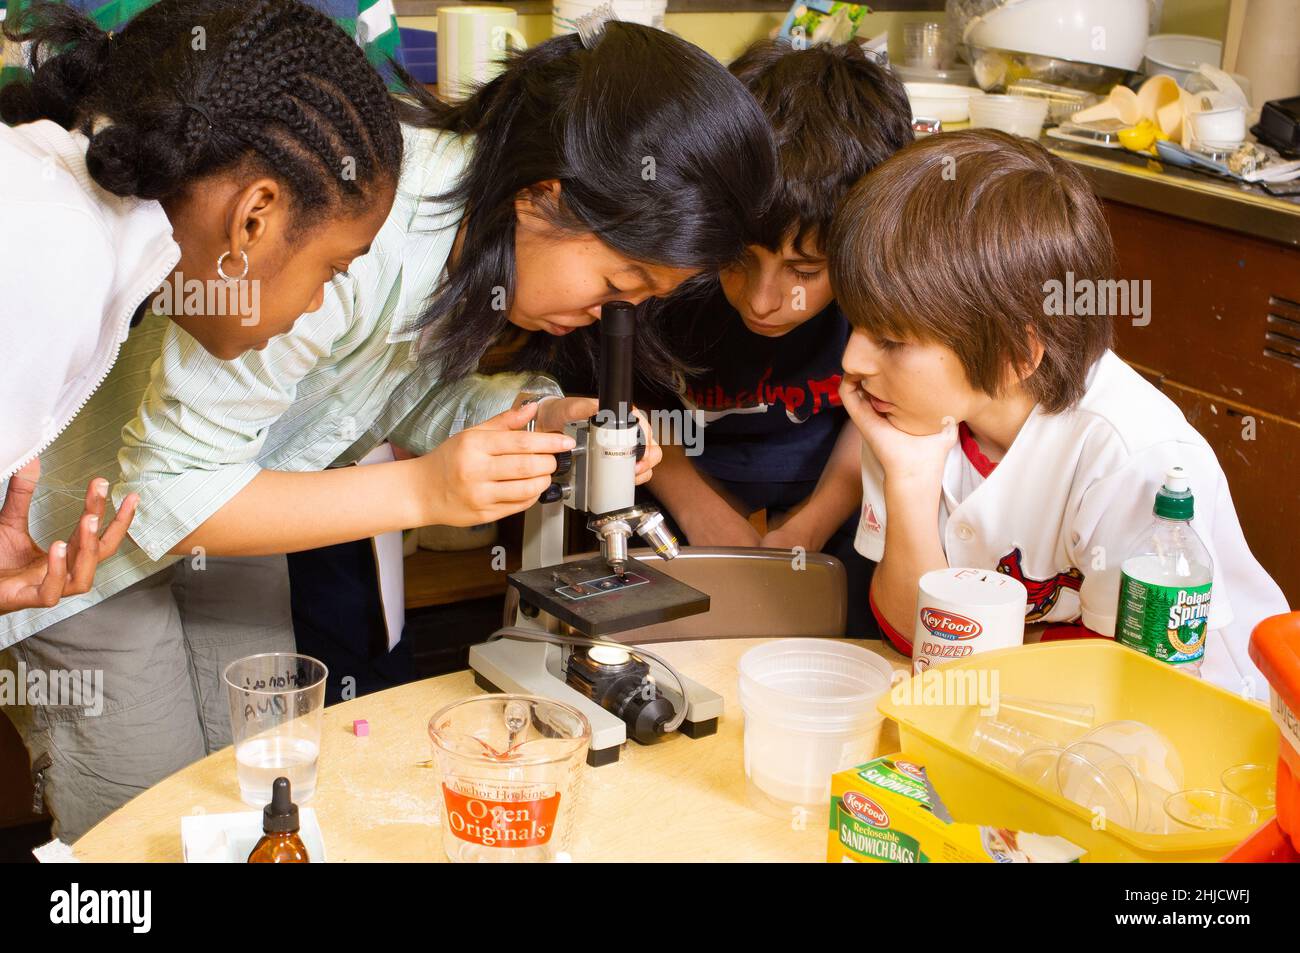 Educación Escuela Primaria o Intermedia Grado 6 CLASE DE CIENCIA Grupo de extracción de ADN de dos niñas y dos niños trabajando en experimentos, usando microscopio Foto de stock